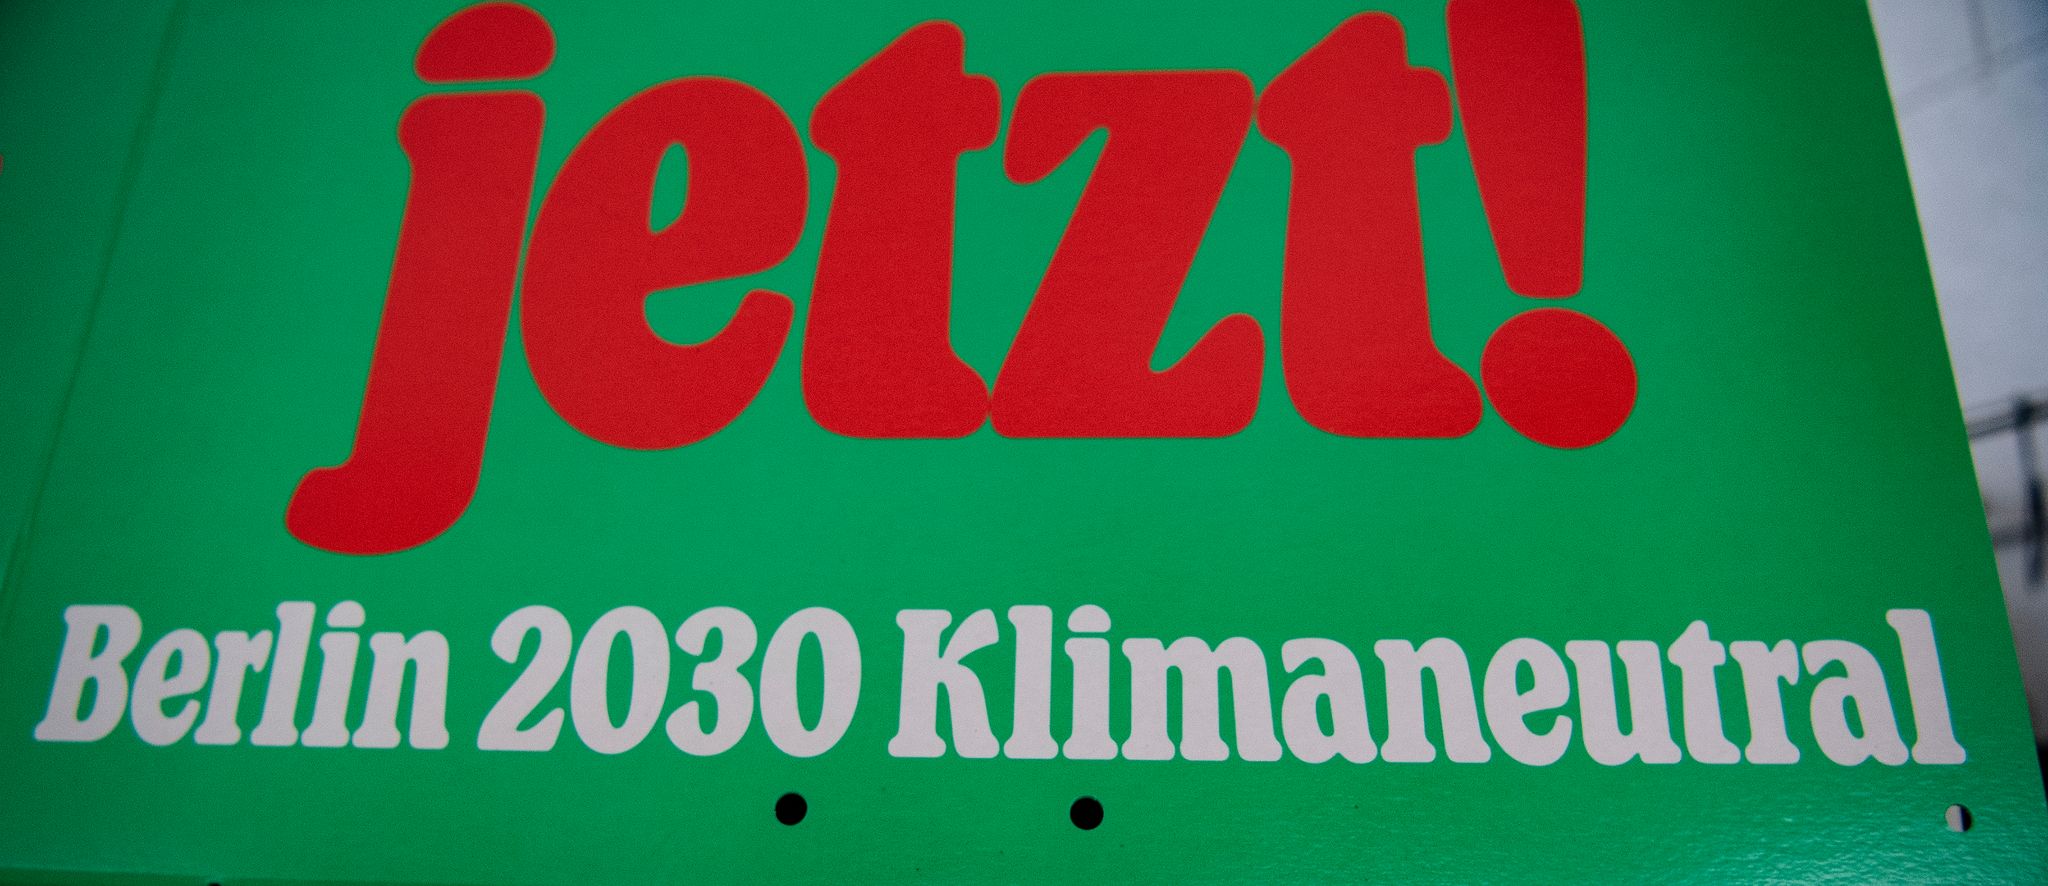 «Berlin 2030 Klimaneutral» steht auf einem Plakat.